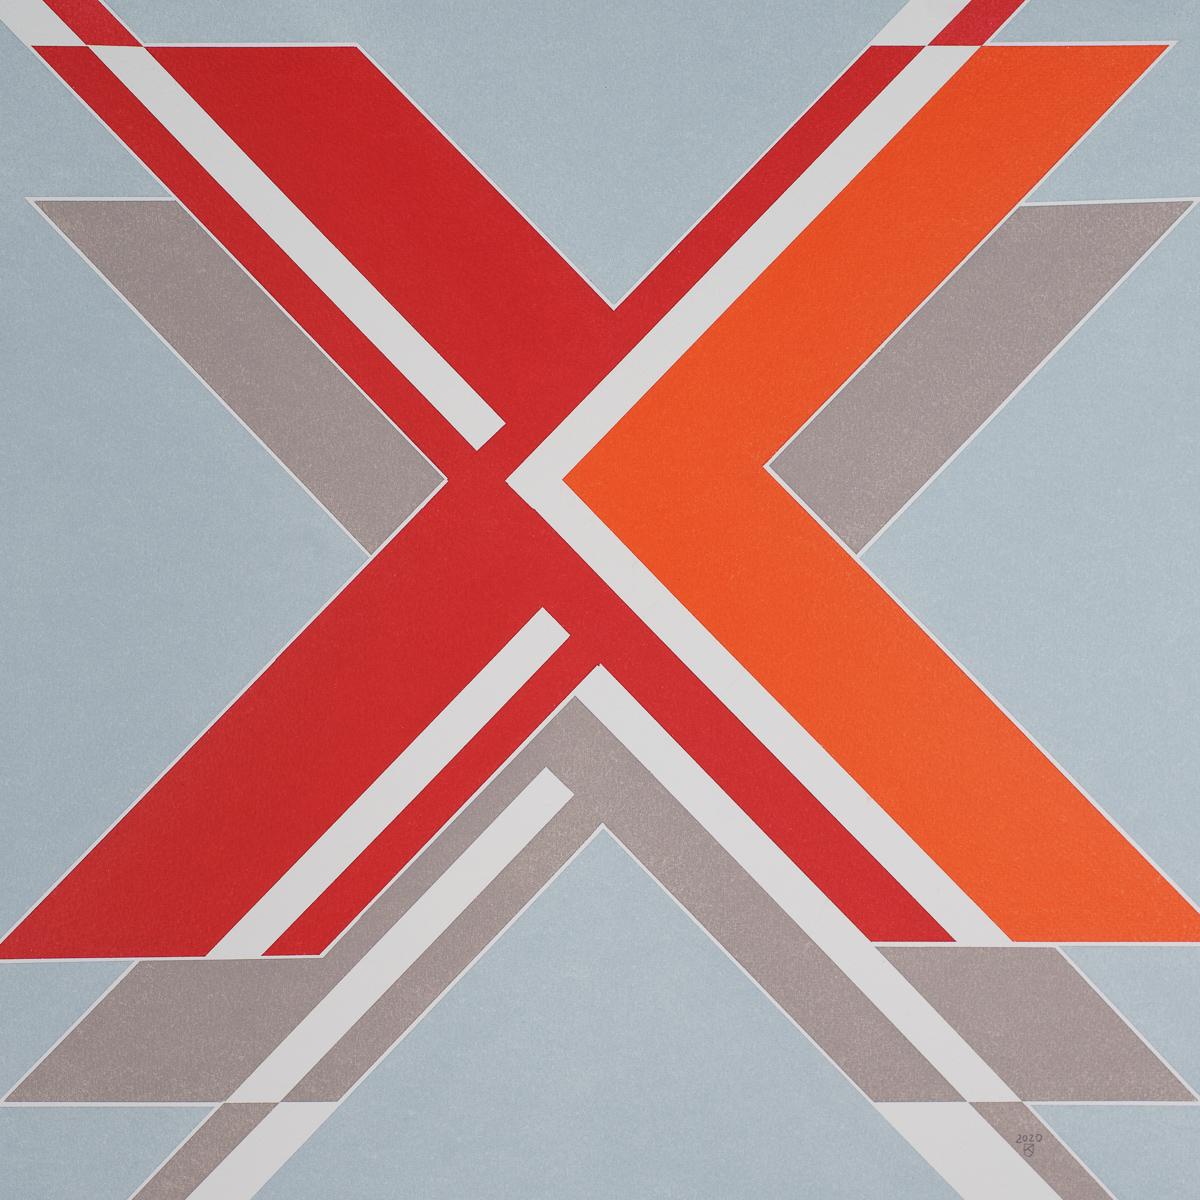  X  Aus der Serie „The Message“ – zeitgenössisches abstraktes Ölgemälde in Pastell, gerahmt